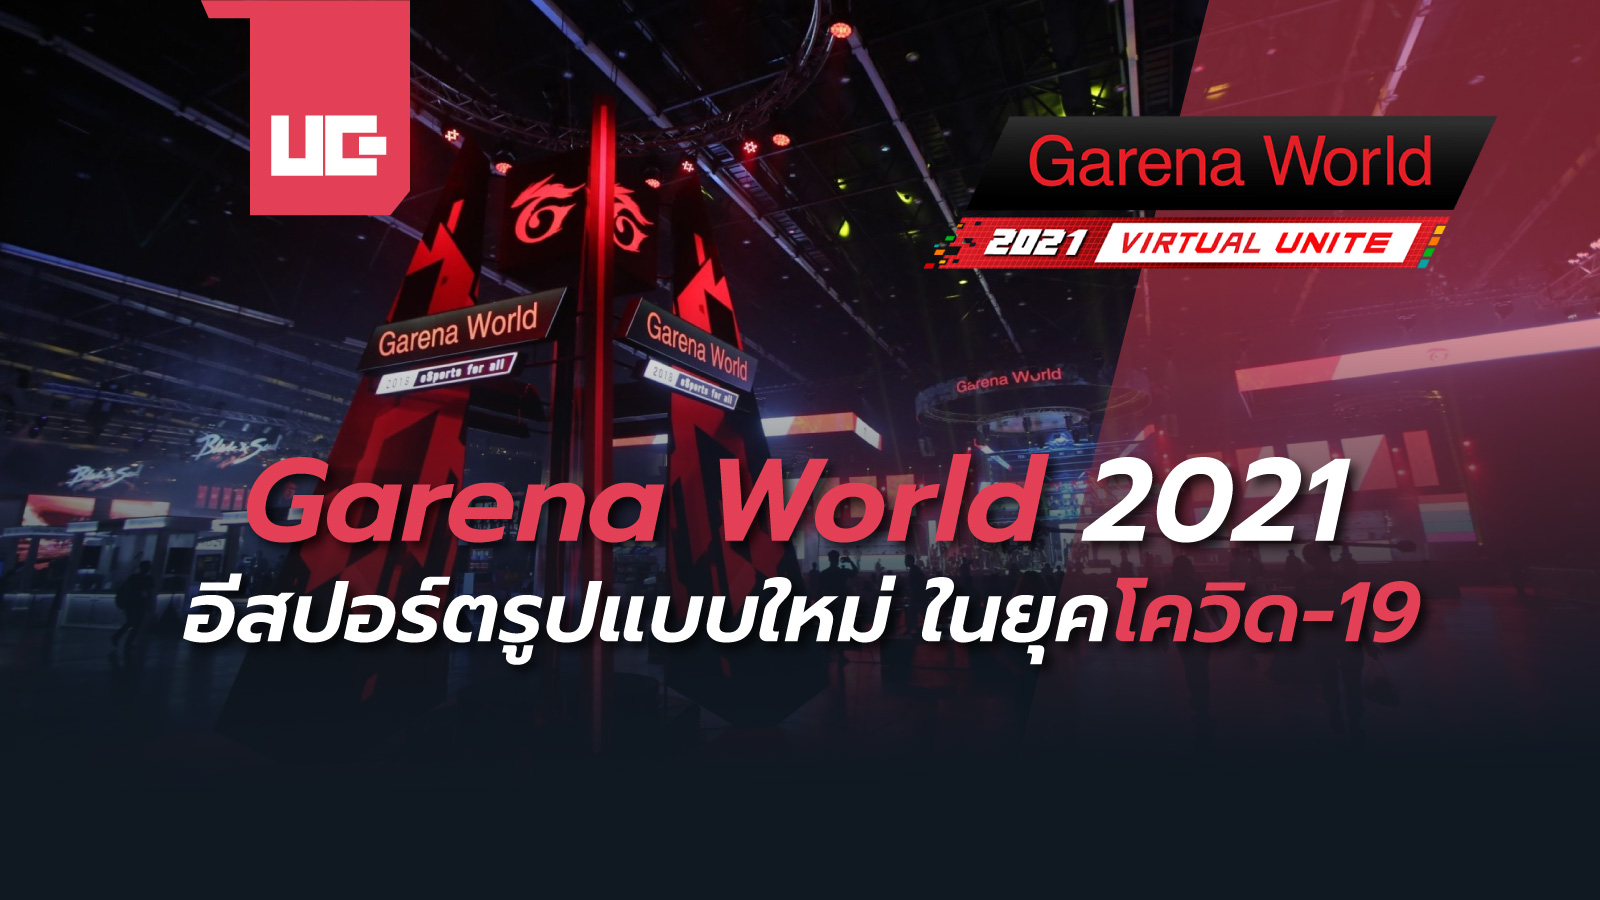 Garena World 2021 อีสปอร์ตรูปแบบใหม่ ในยุคโควิด-19